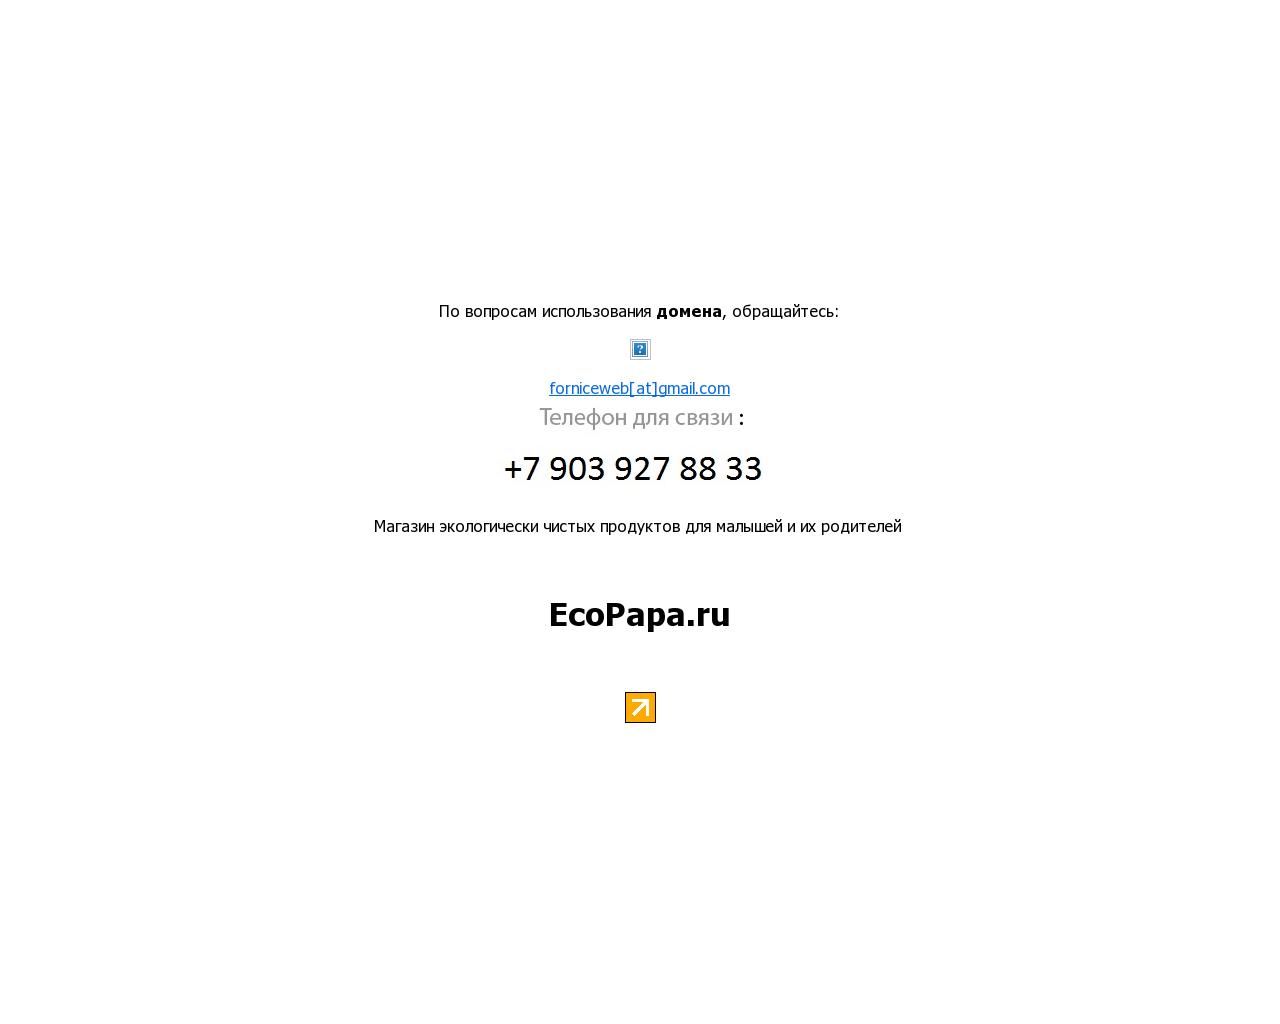 Изображение сайта ecopapa.ru в разрешении 1280x1024